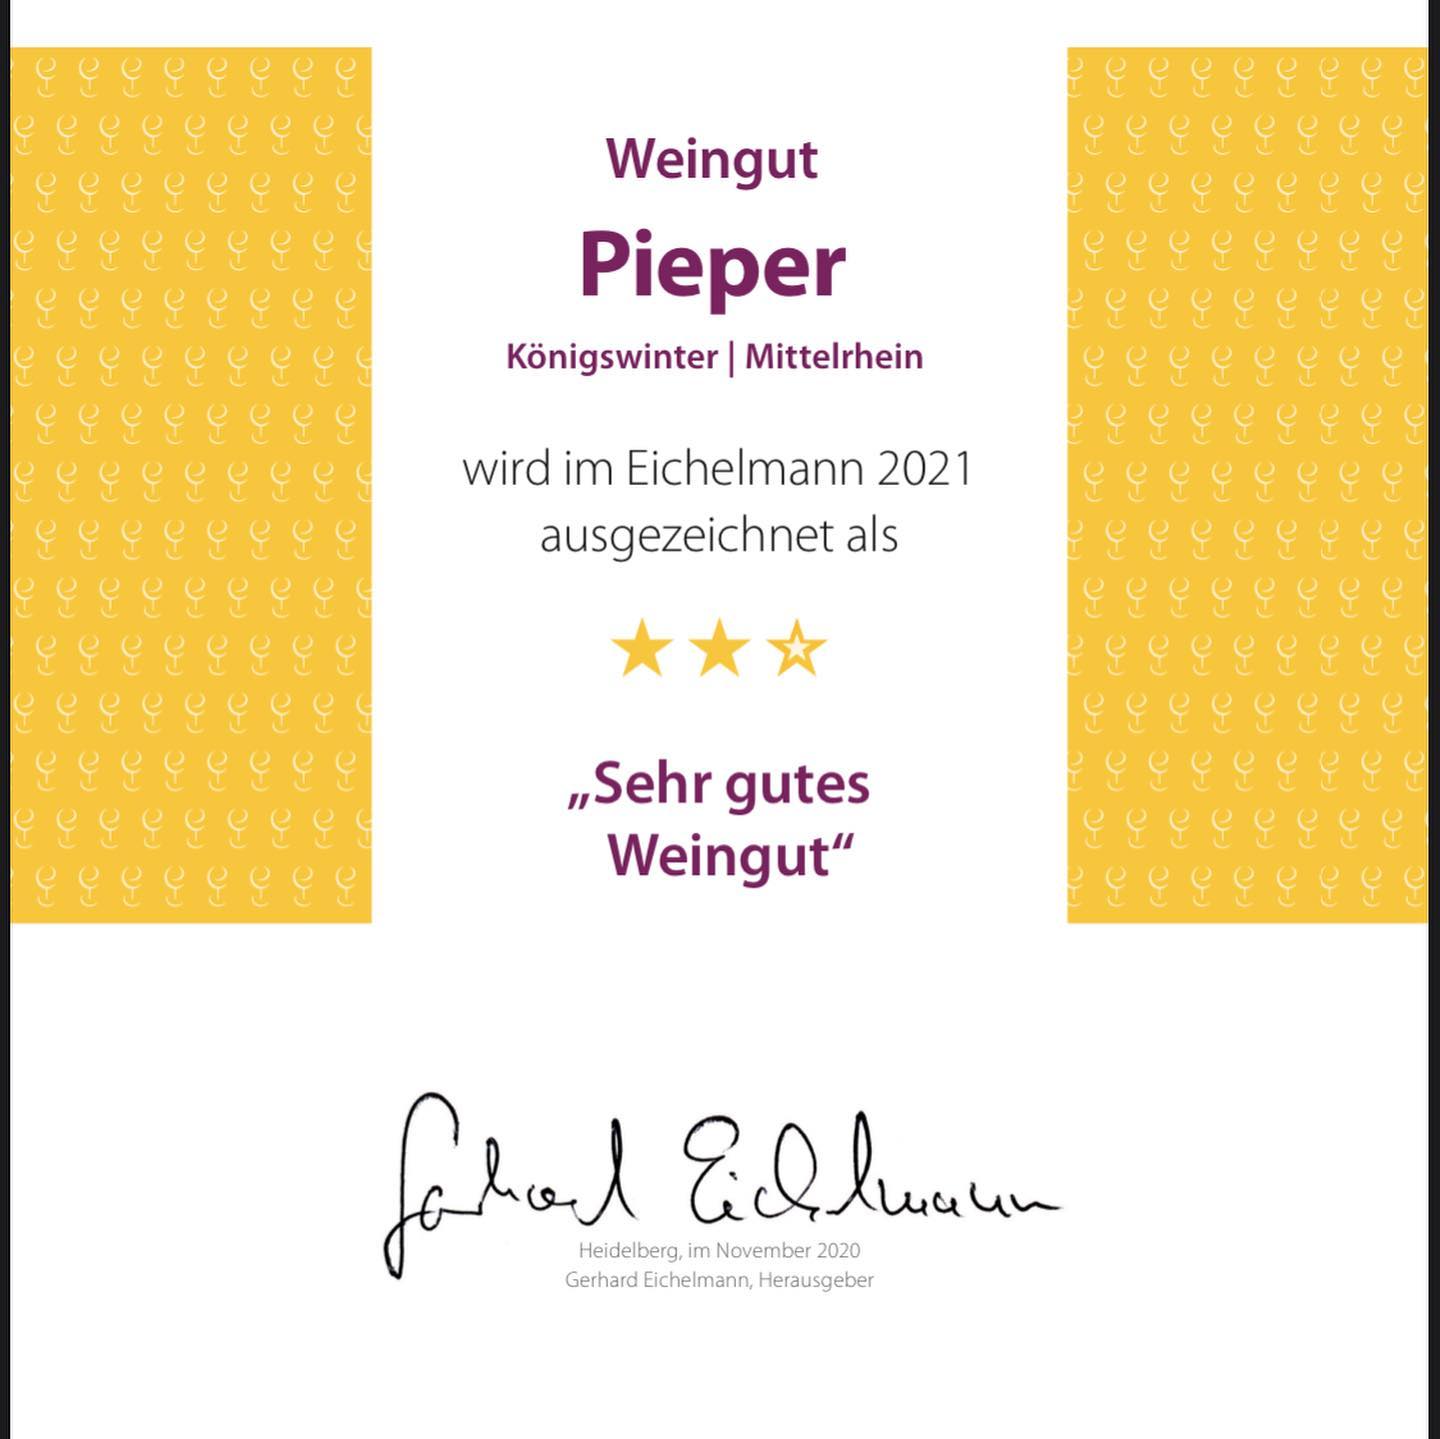 Urkunde Eichelmann Weinguide 2021 - Weingut Pieper